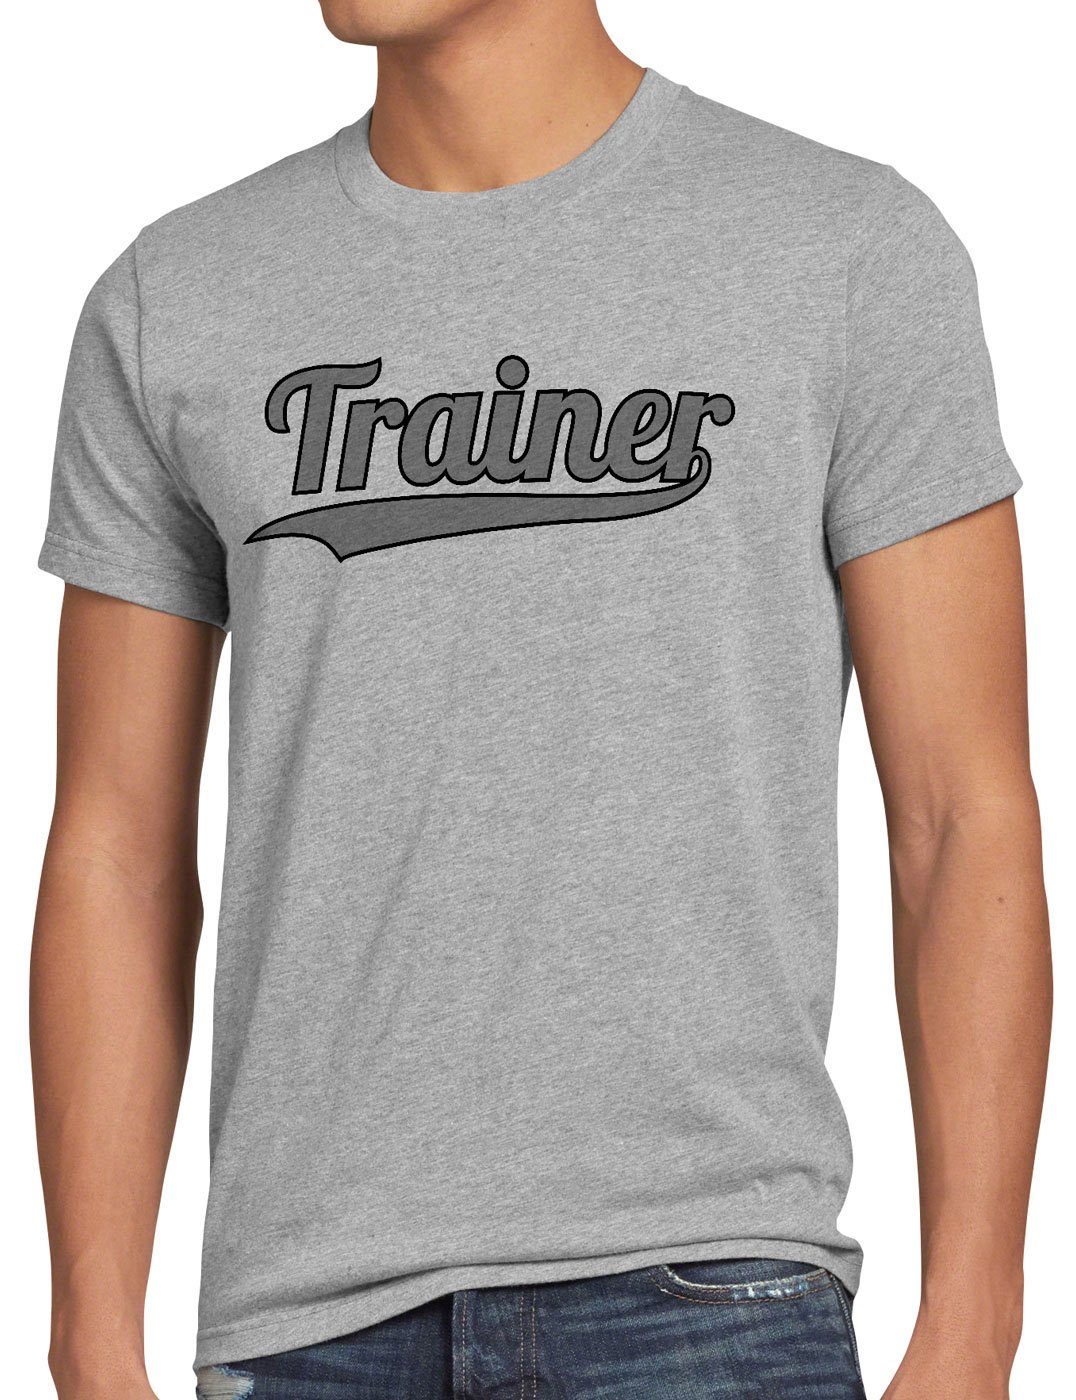 style3 Print-Shirt Herren Mannschaft meliert Fun-shirt Sport grau Spruch-shirt Coach Fussball Trainer T-Shirt